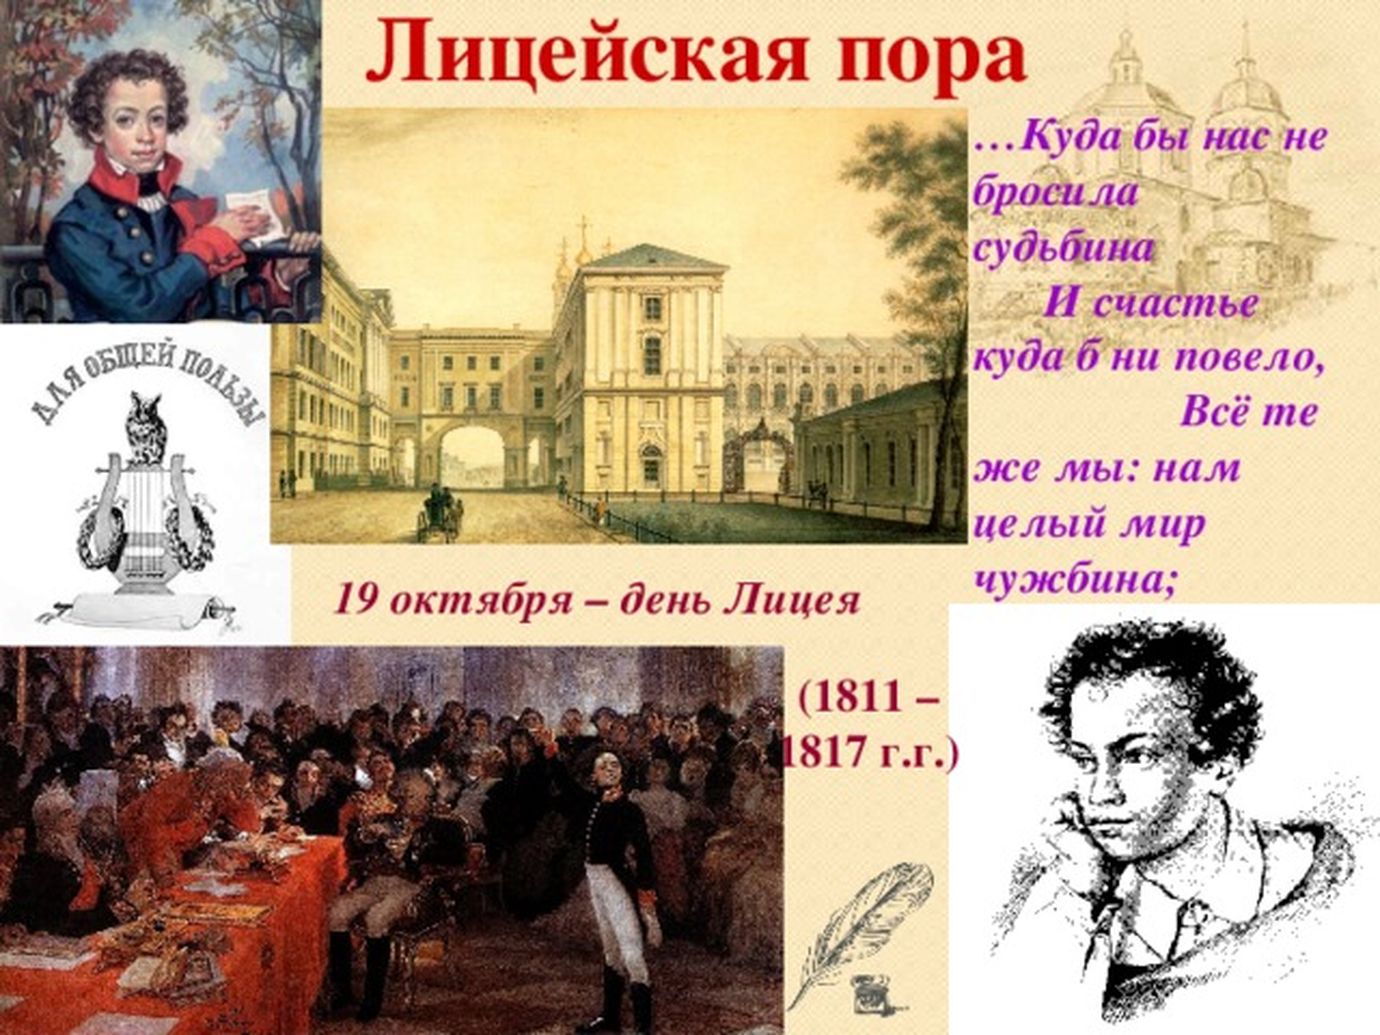 19 Октября Пушкин день лицеиста